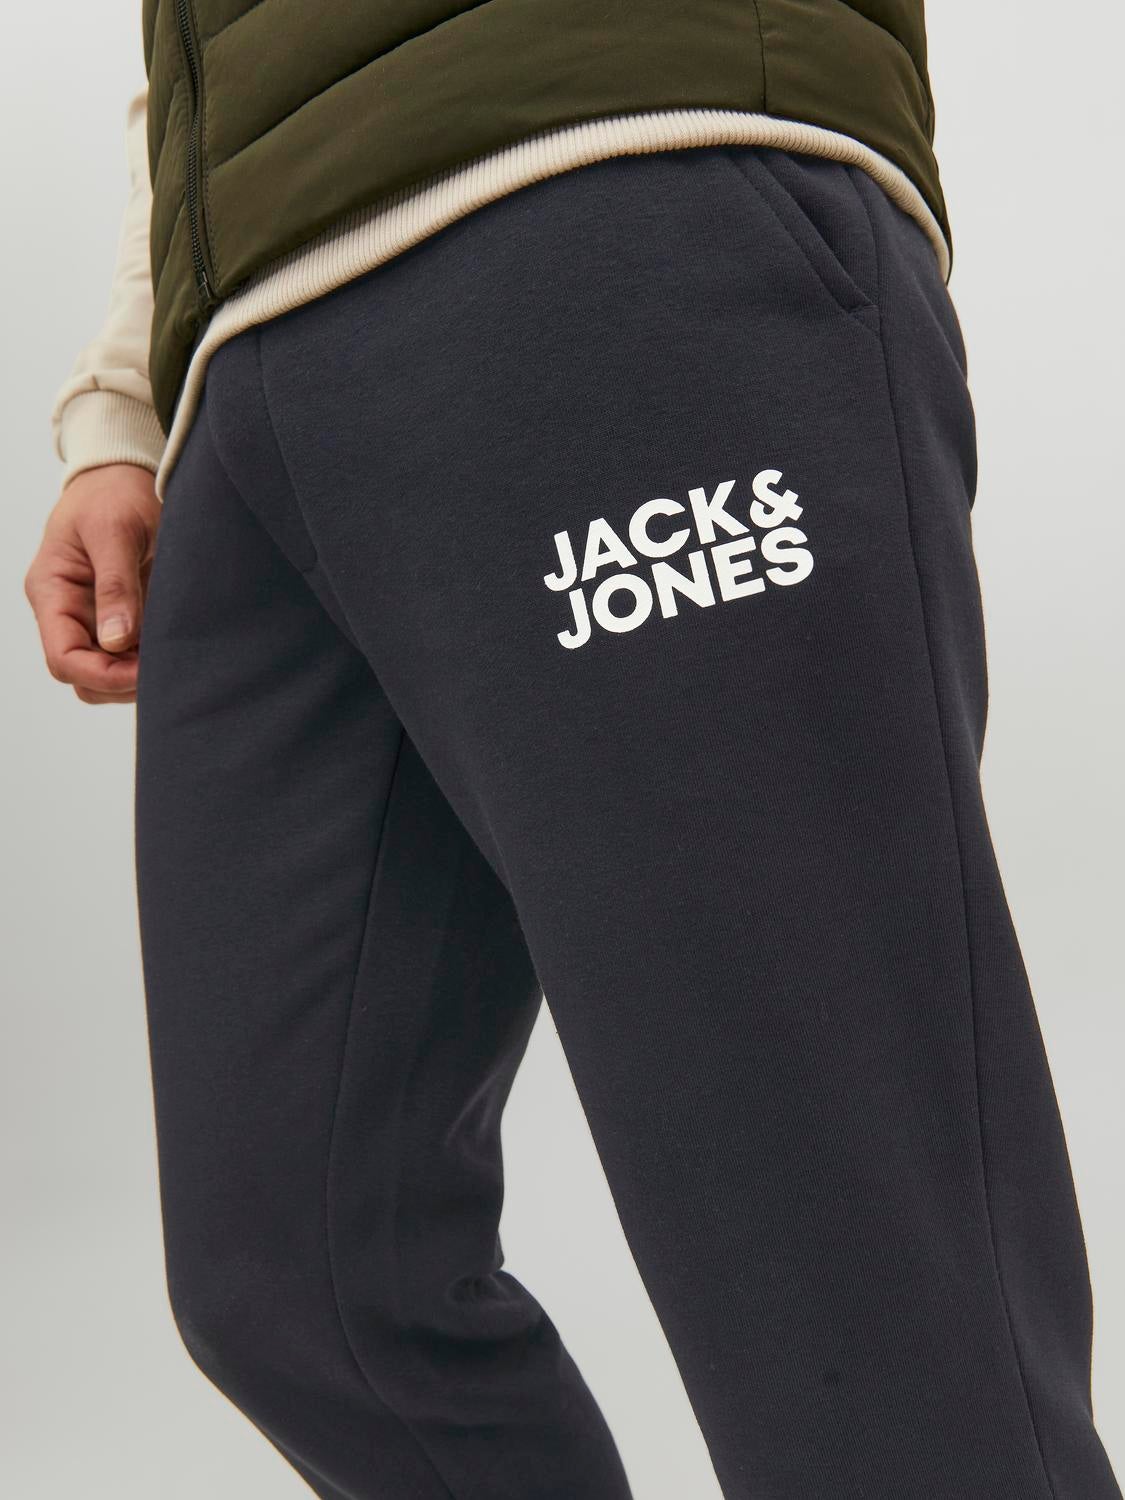 Buy Jack & Jones Maroon Regular Fit Joggers for Men's Online @ Tata CLiQ